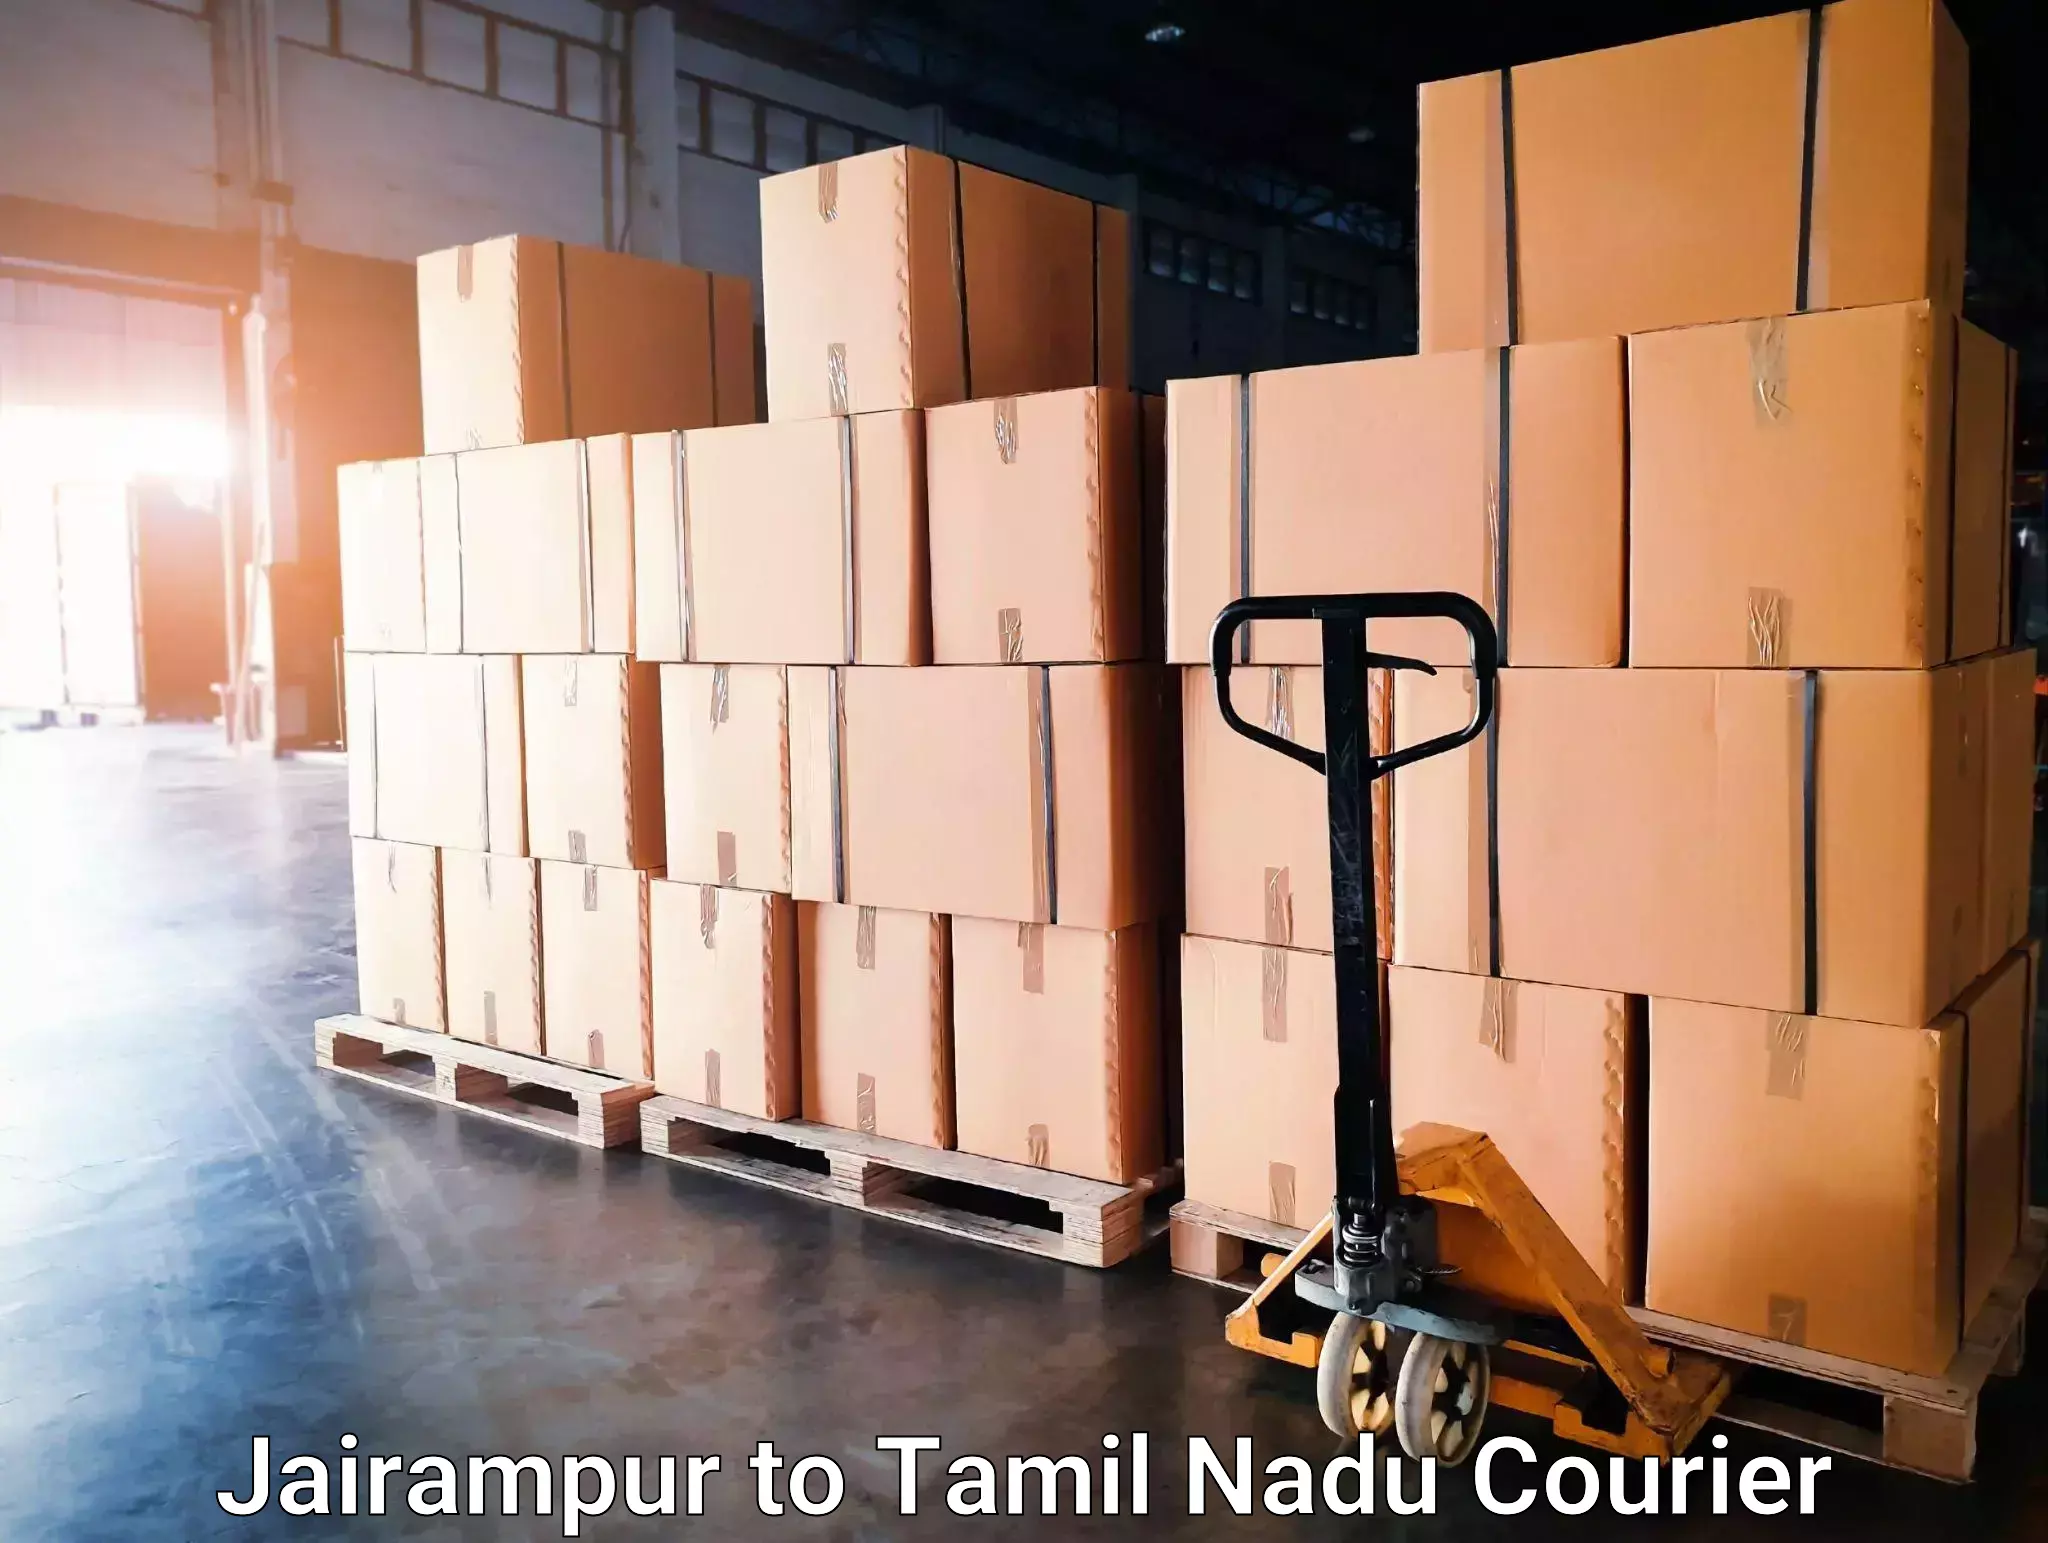 Premium courier solutions Jairampur to Tamil Nadu